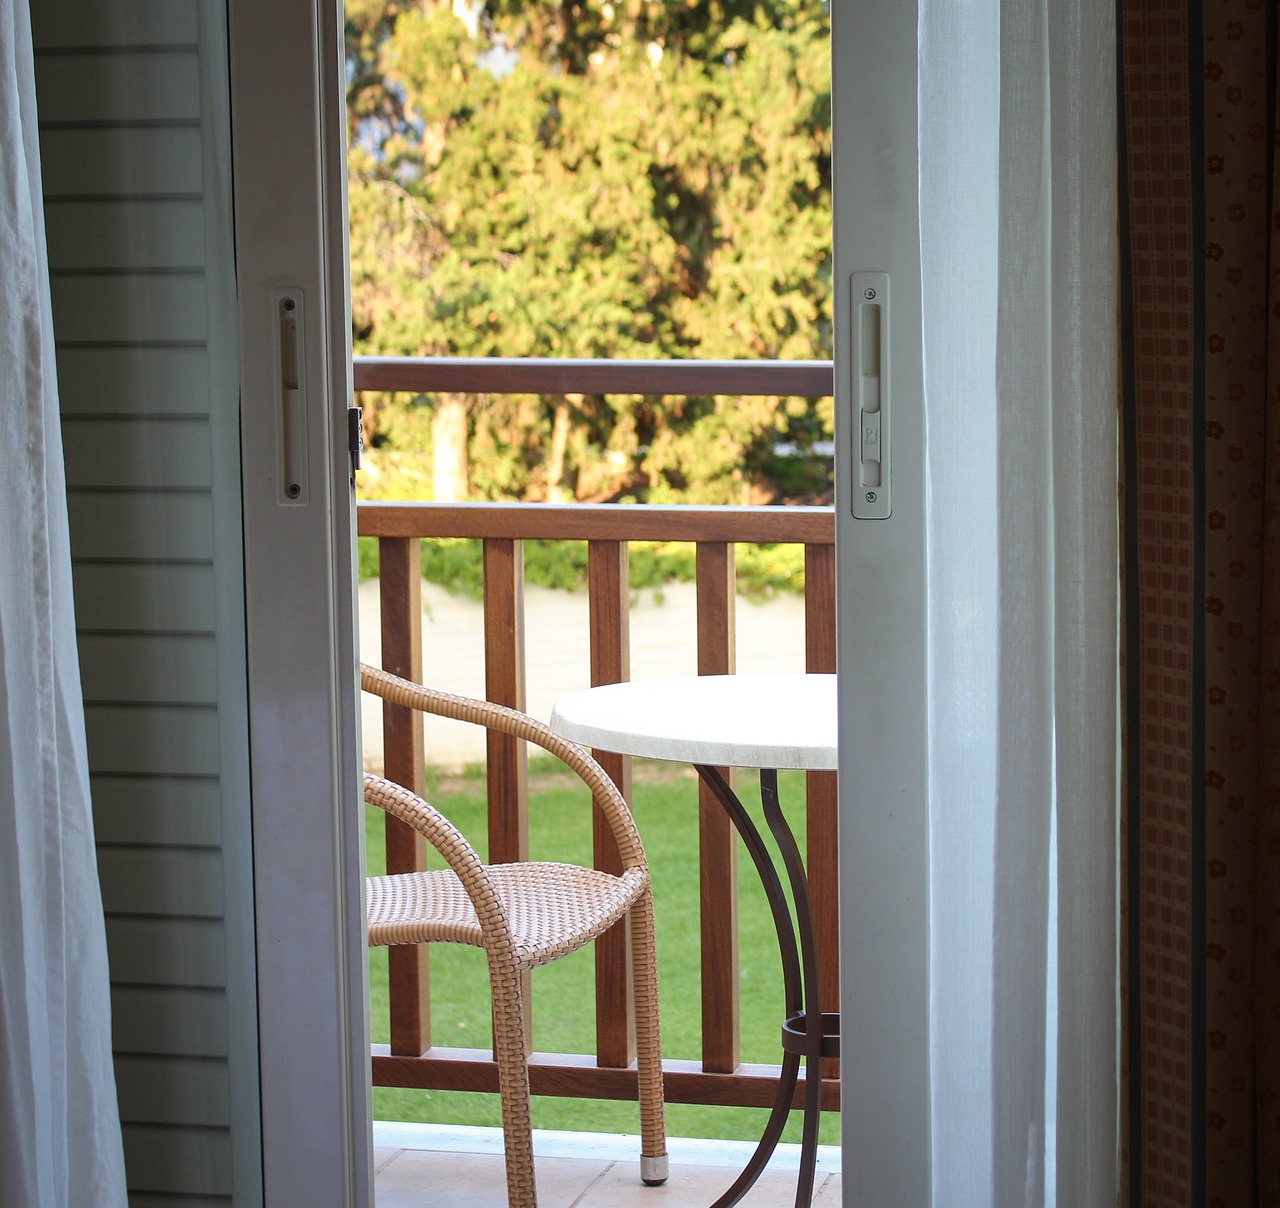 Buitenkamers: maak je balkon perfect voor ontspanning